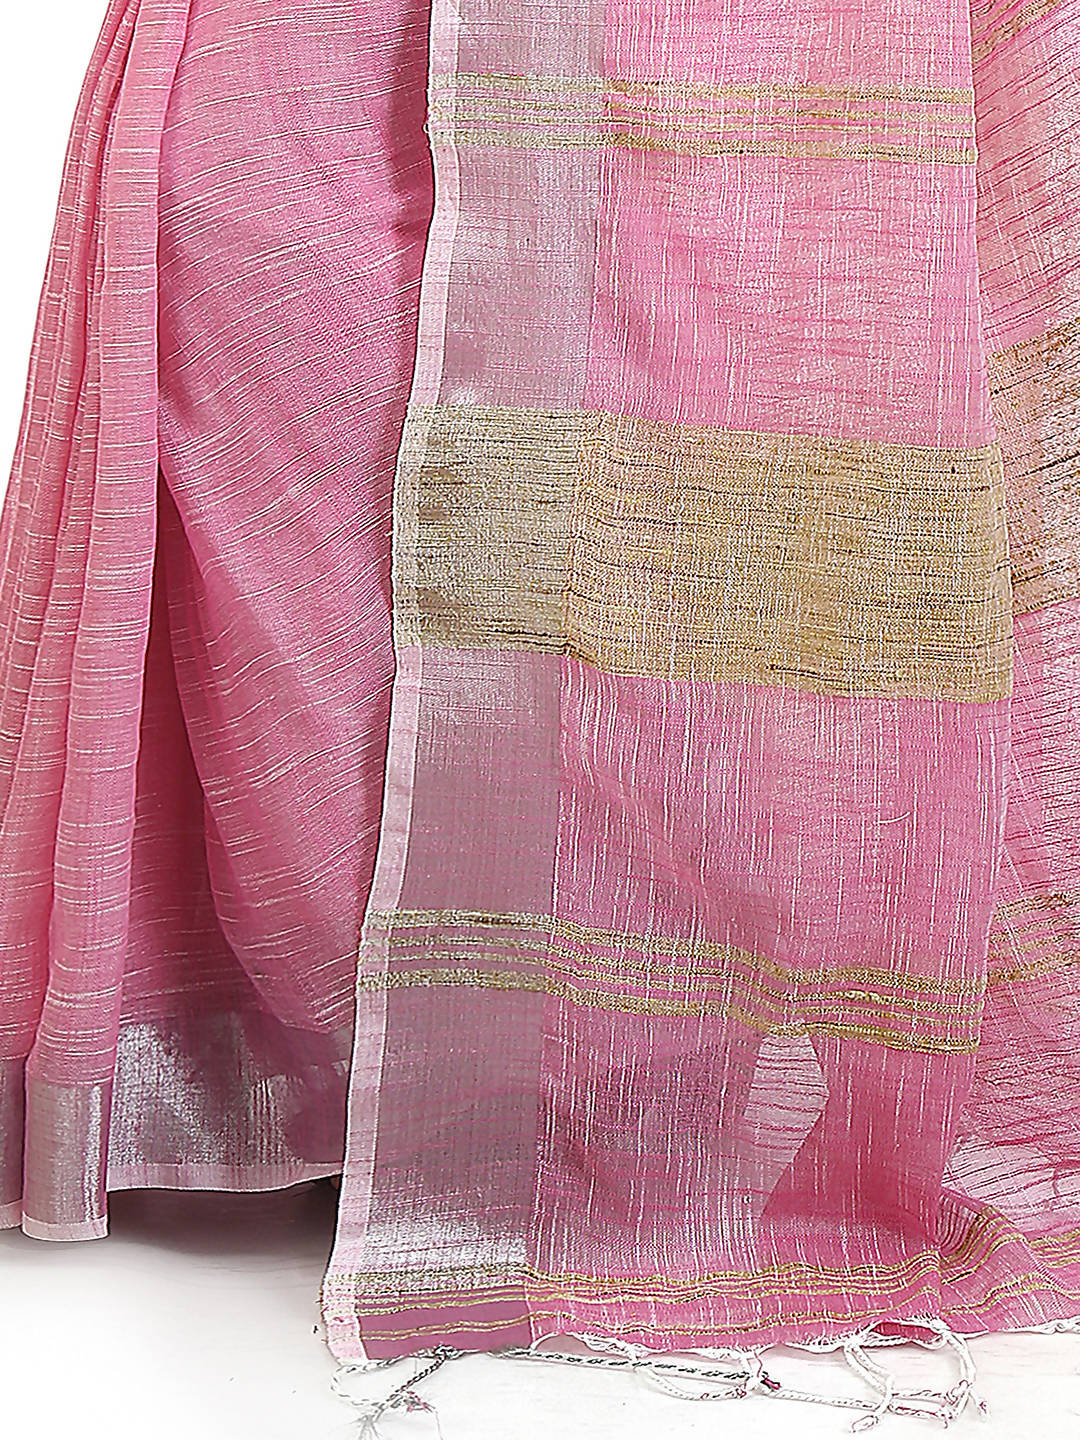 Deep pink handloom bengal cotton and linen saree